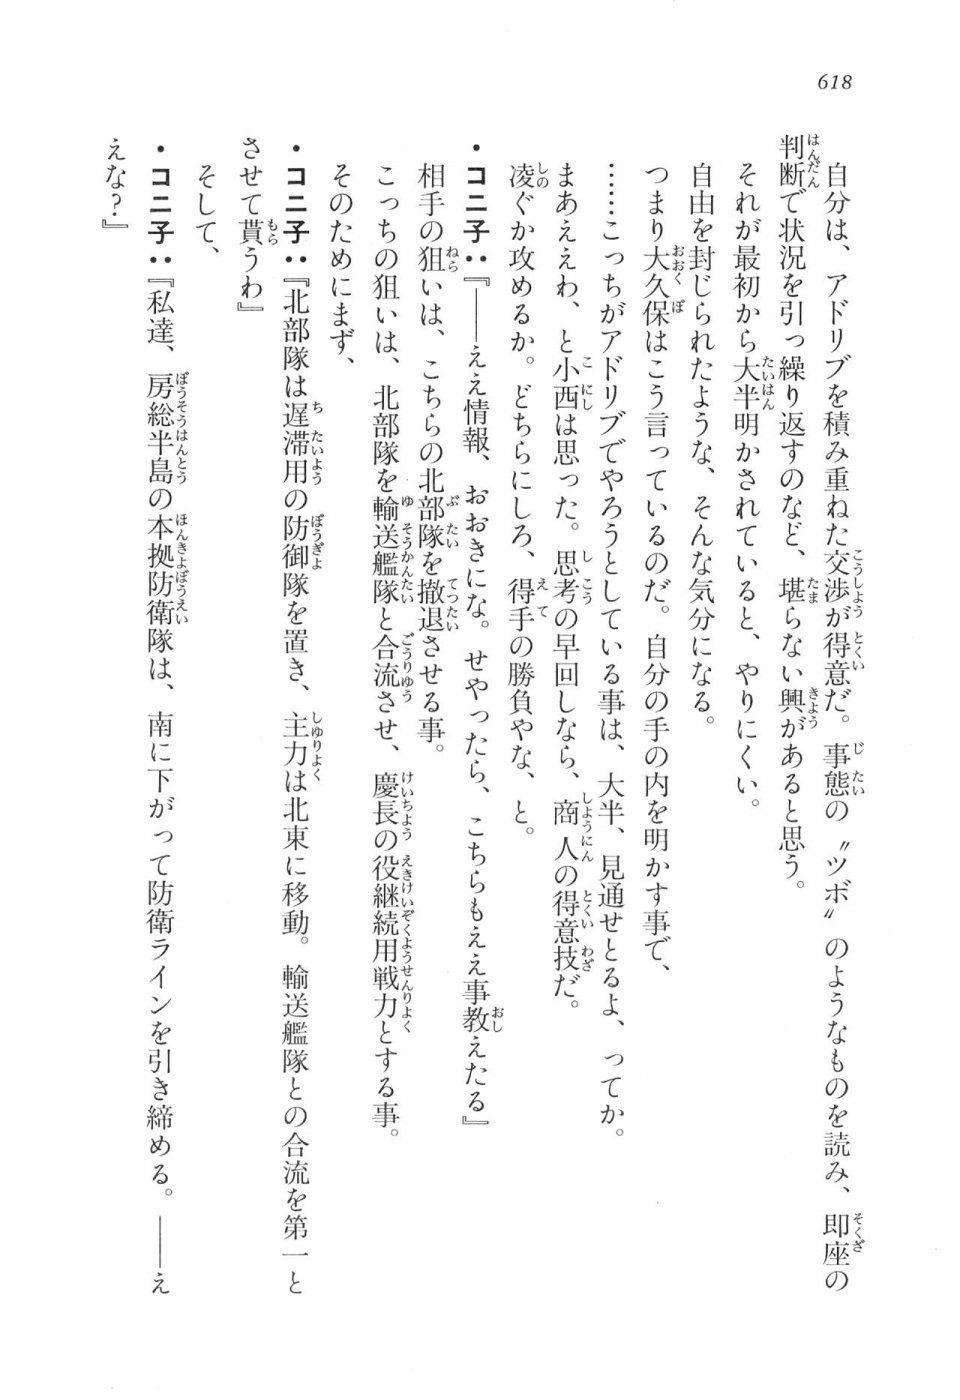 Kyoukai Senjou no Horizon LN Vol 17(7B) - Photo #620